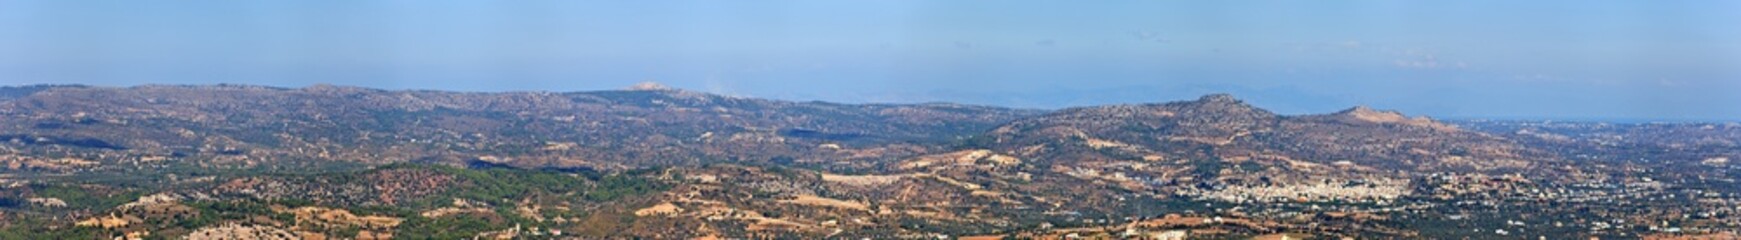 Fototapeta na wymiar Panoramiczny widok z góry